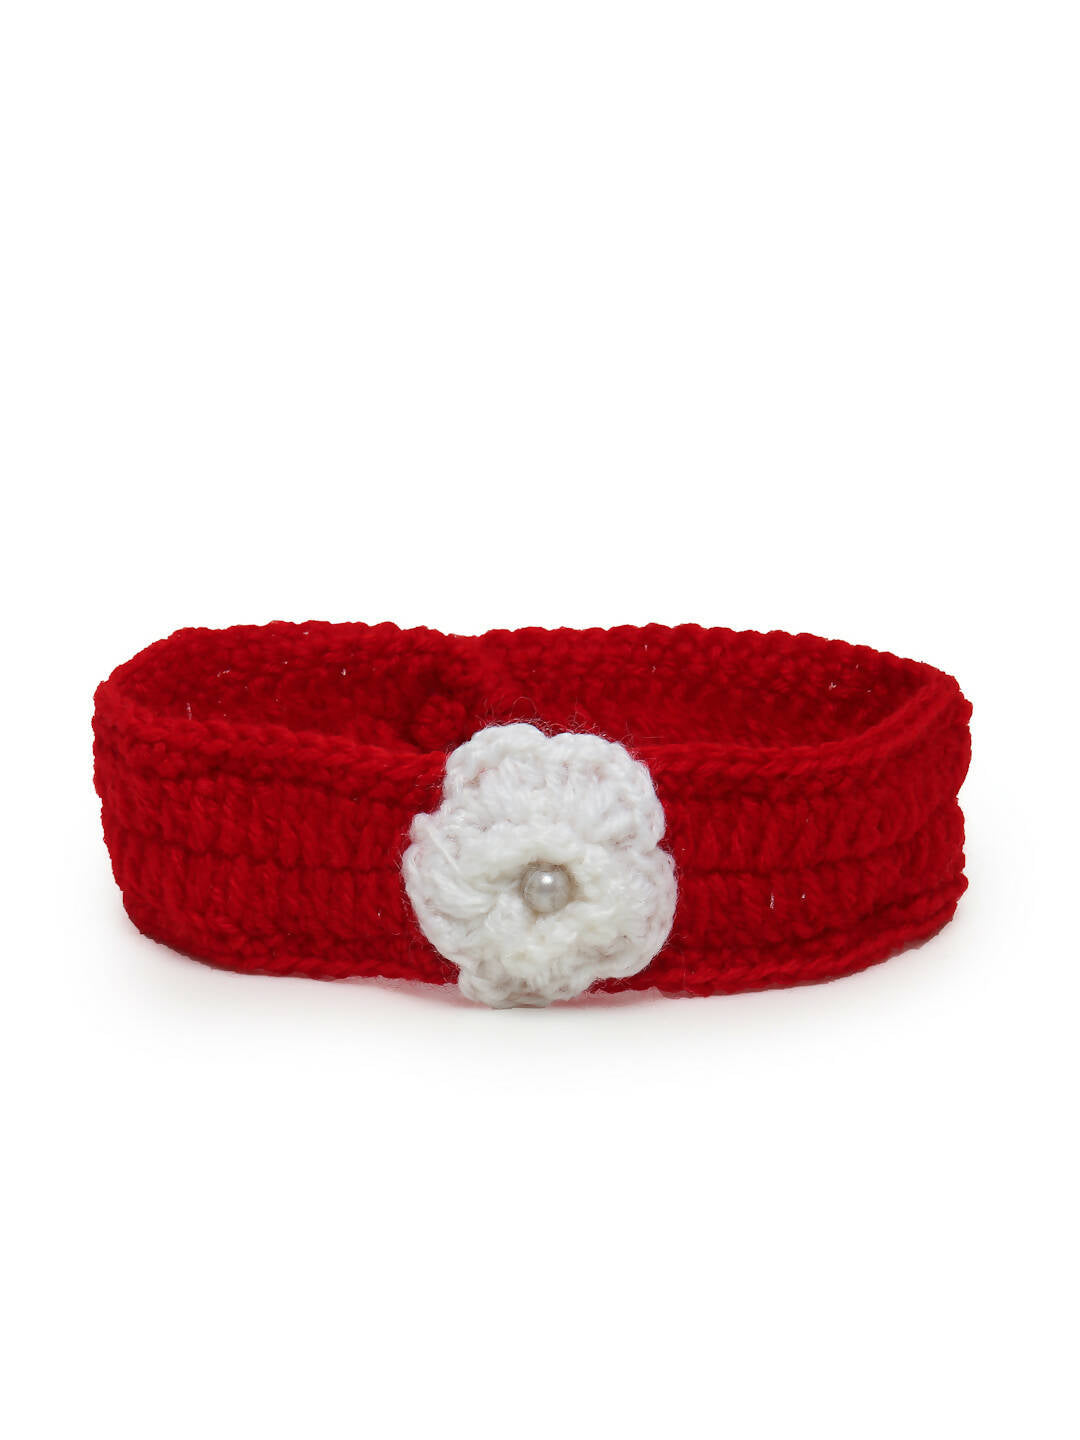 ChutPut Hand knitted Crochet Red Wedding Wool Dress - Distacart